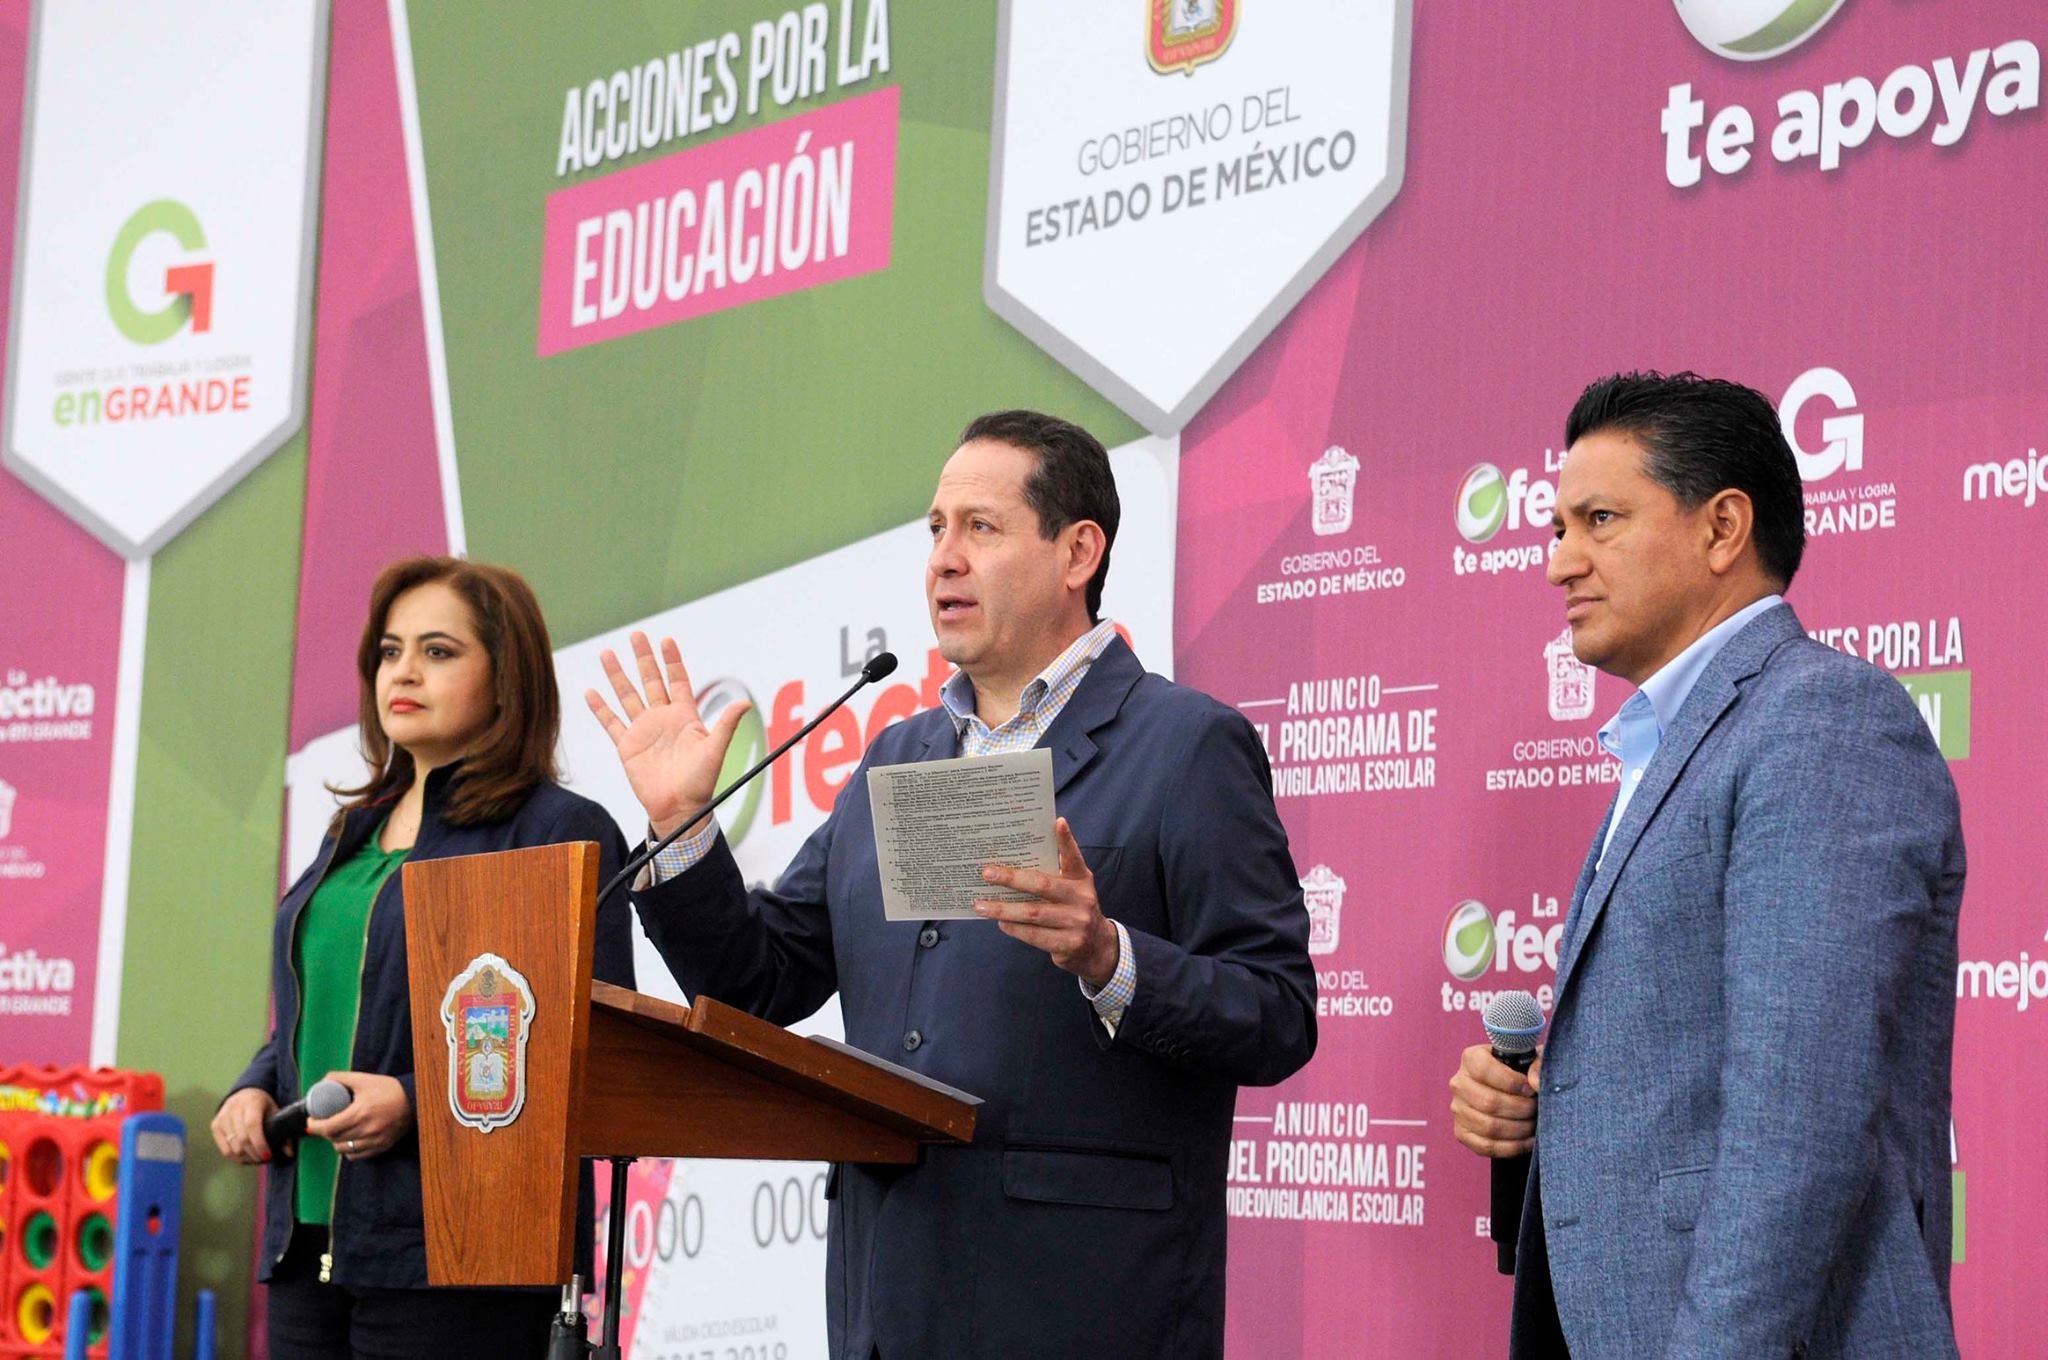 El gobernador Eruviel Ávila, entregó en el Centro de Convenciones de Toluca, apoyos de las acciones por la educación